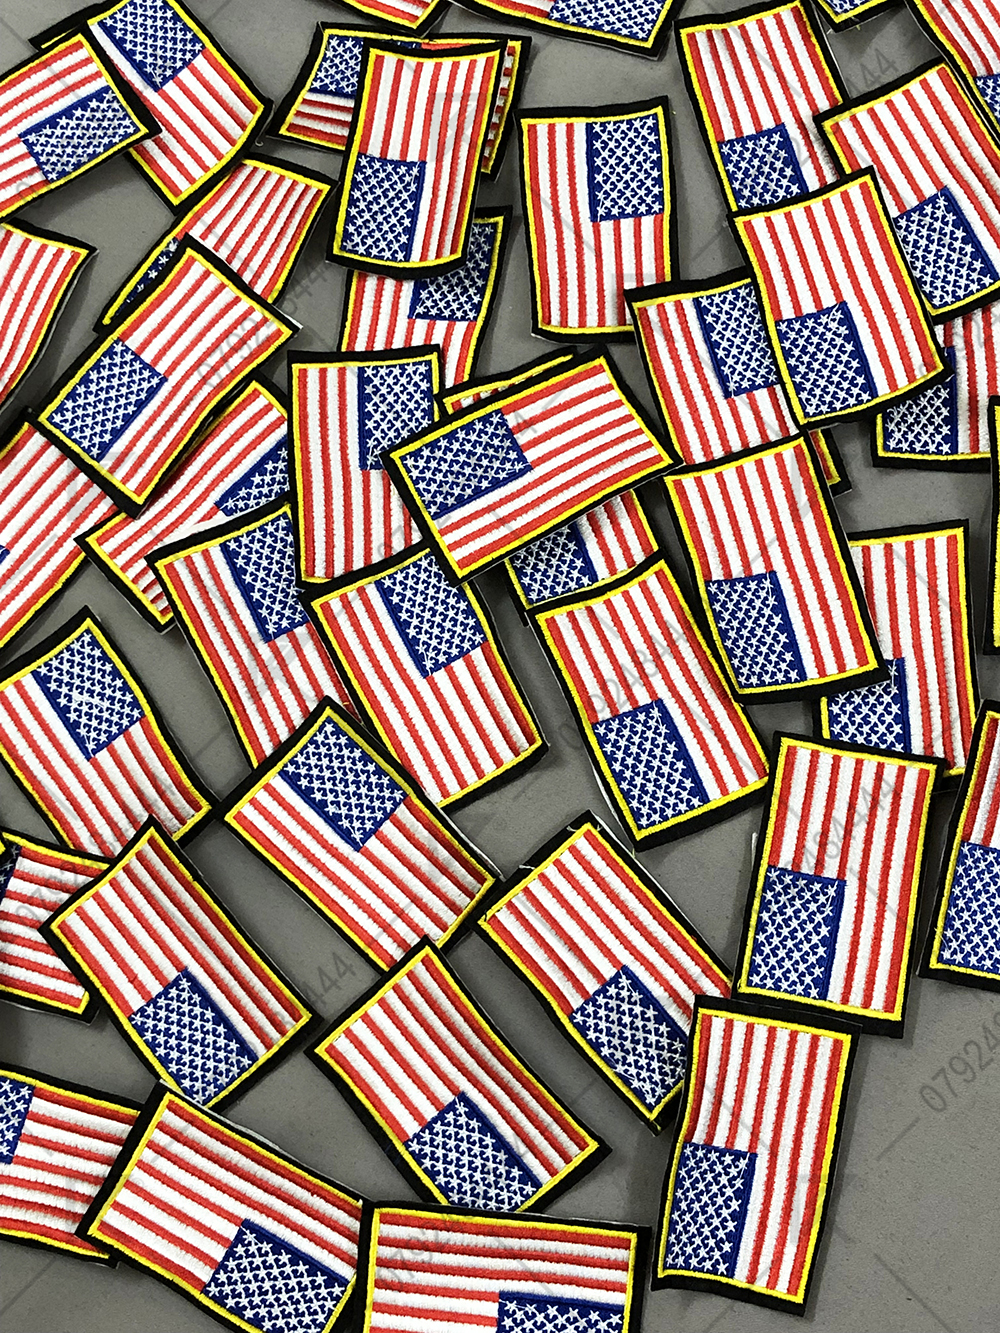 Sticker Logo Thêu Quần Áo LÁ CỜ MỸ - MixASale logo lá cờ Mỹ - Sticker Lá Cờ Mỹ: Sticker Lá Cờ Mỹ là cách tuyệt vời để thể hiện tình yêu và lòng tự hào đối với nước Mỹ. Cho dù bạn muốn trang trí áo quần của mình hoặc một món quà, những sticker này sẽ chắc chắn thu hút được sự chú ý. Hãy sử dụng Sticker Logo Thêu Quần Áo LÁ CỜ MỸ từ MixASale để biểu hiện sự tự hào của bạn với lá cờ Mỹ.